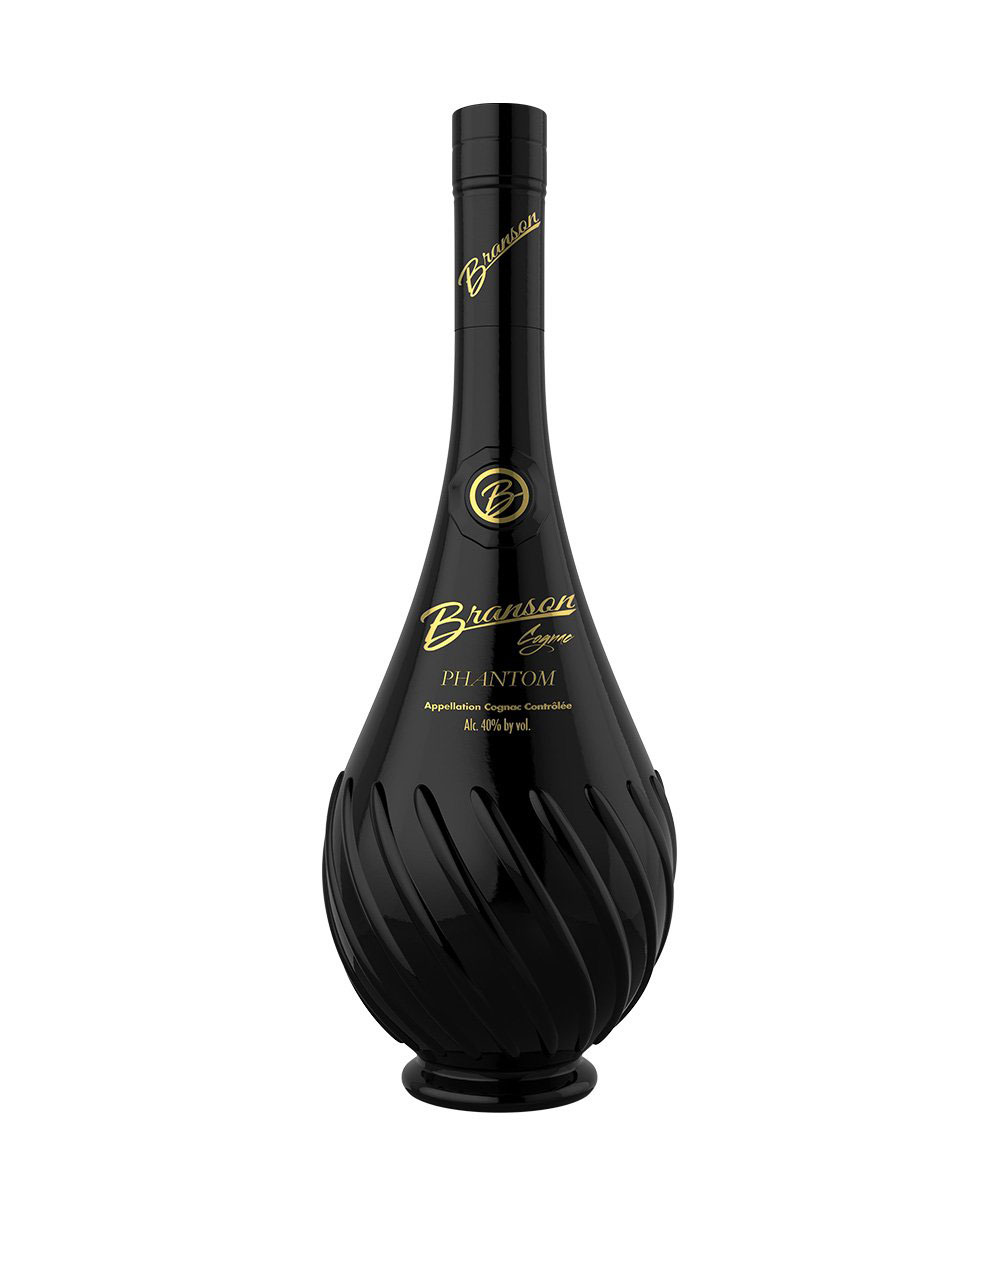 Guillon-Painturaud Hors d'Age Grande Champagne Cognac